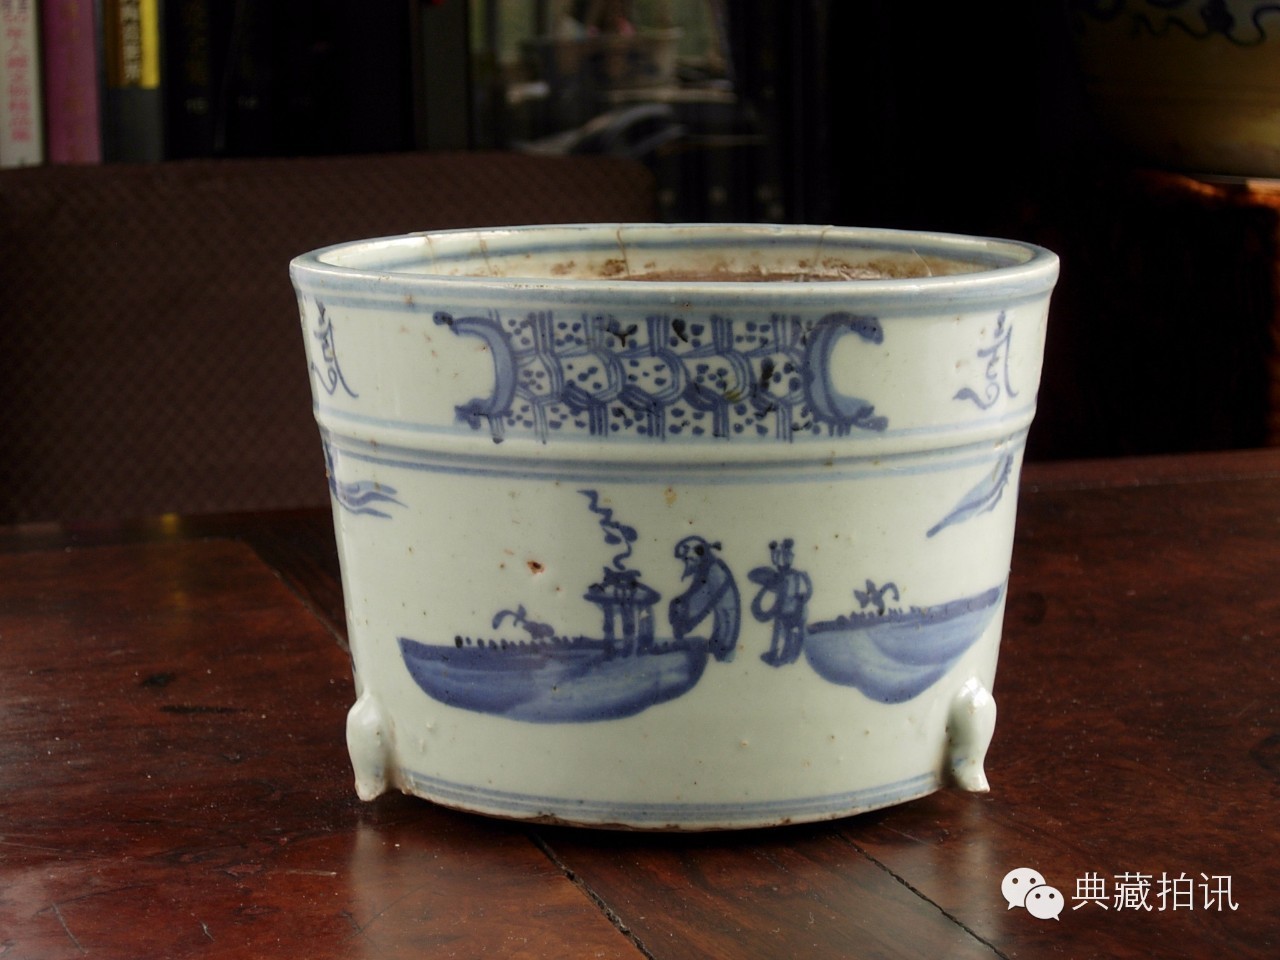 高阿申|再探中国瓷质香炉的文化意义-搜狐